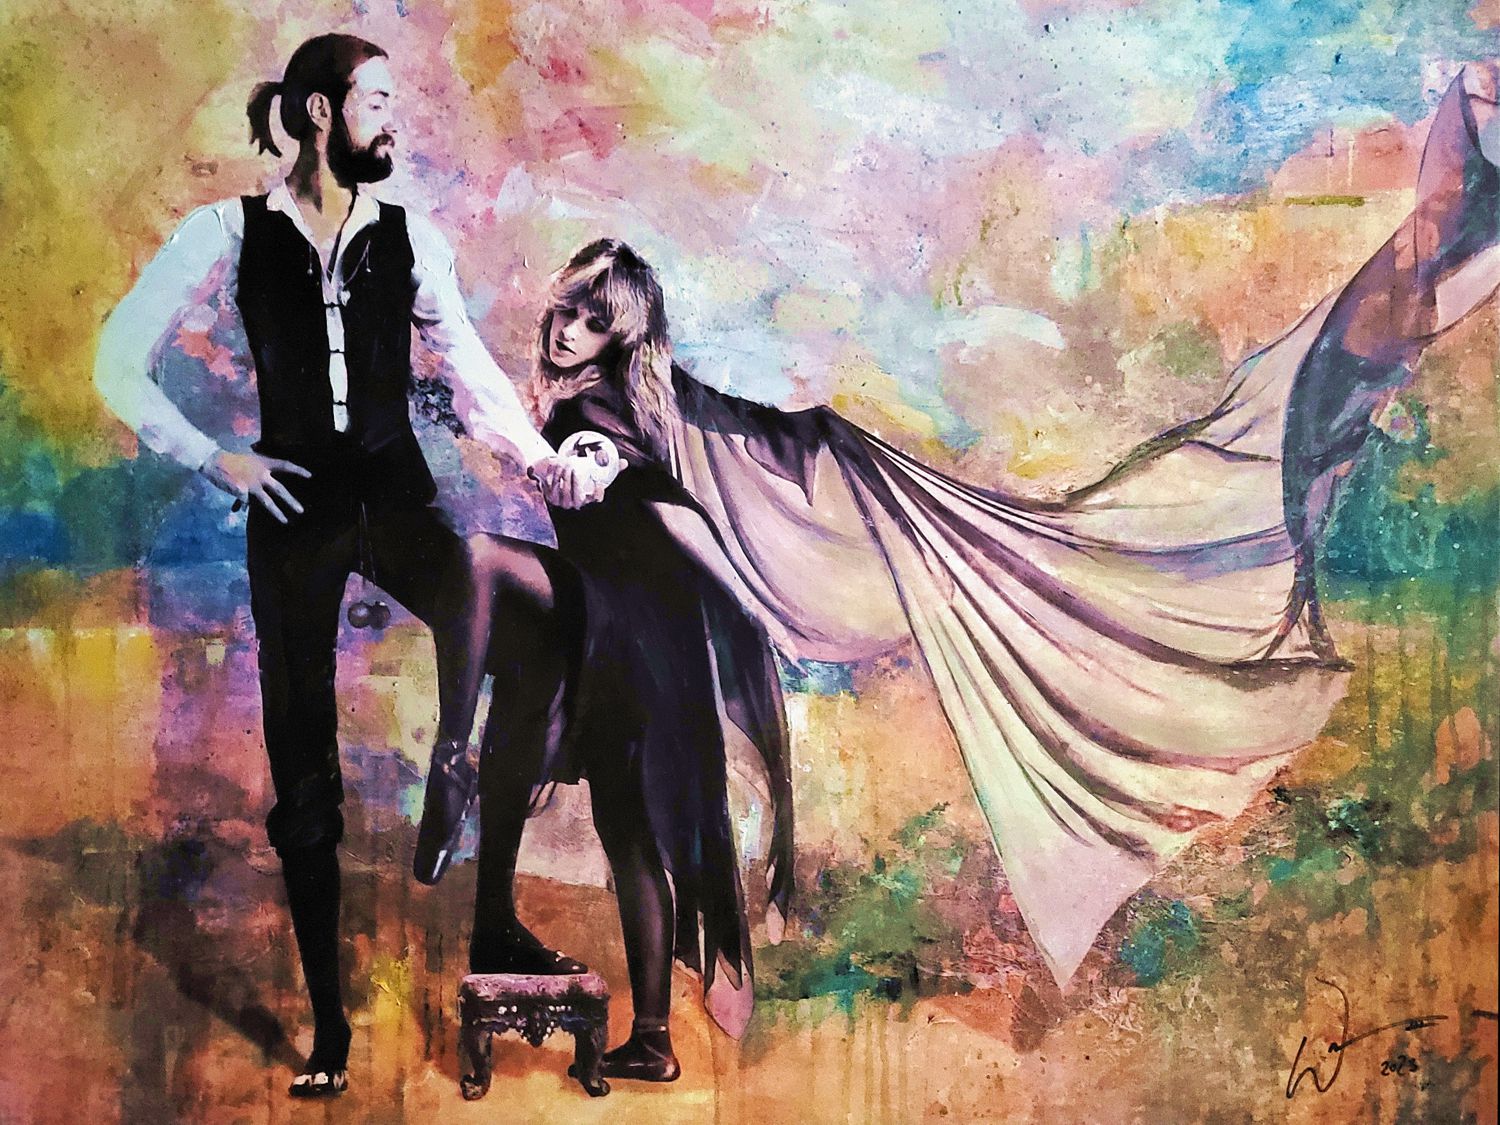 "Rumors" (Fleetwood Mac) painting by artist William III